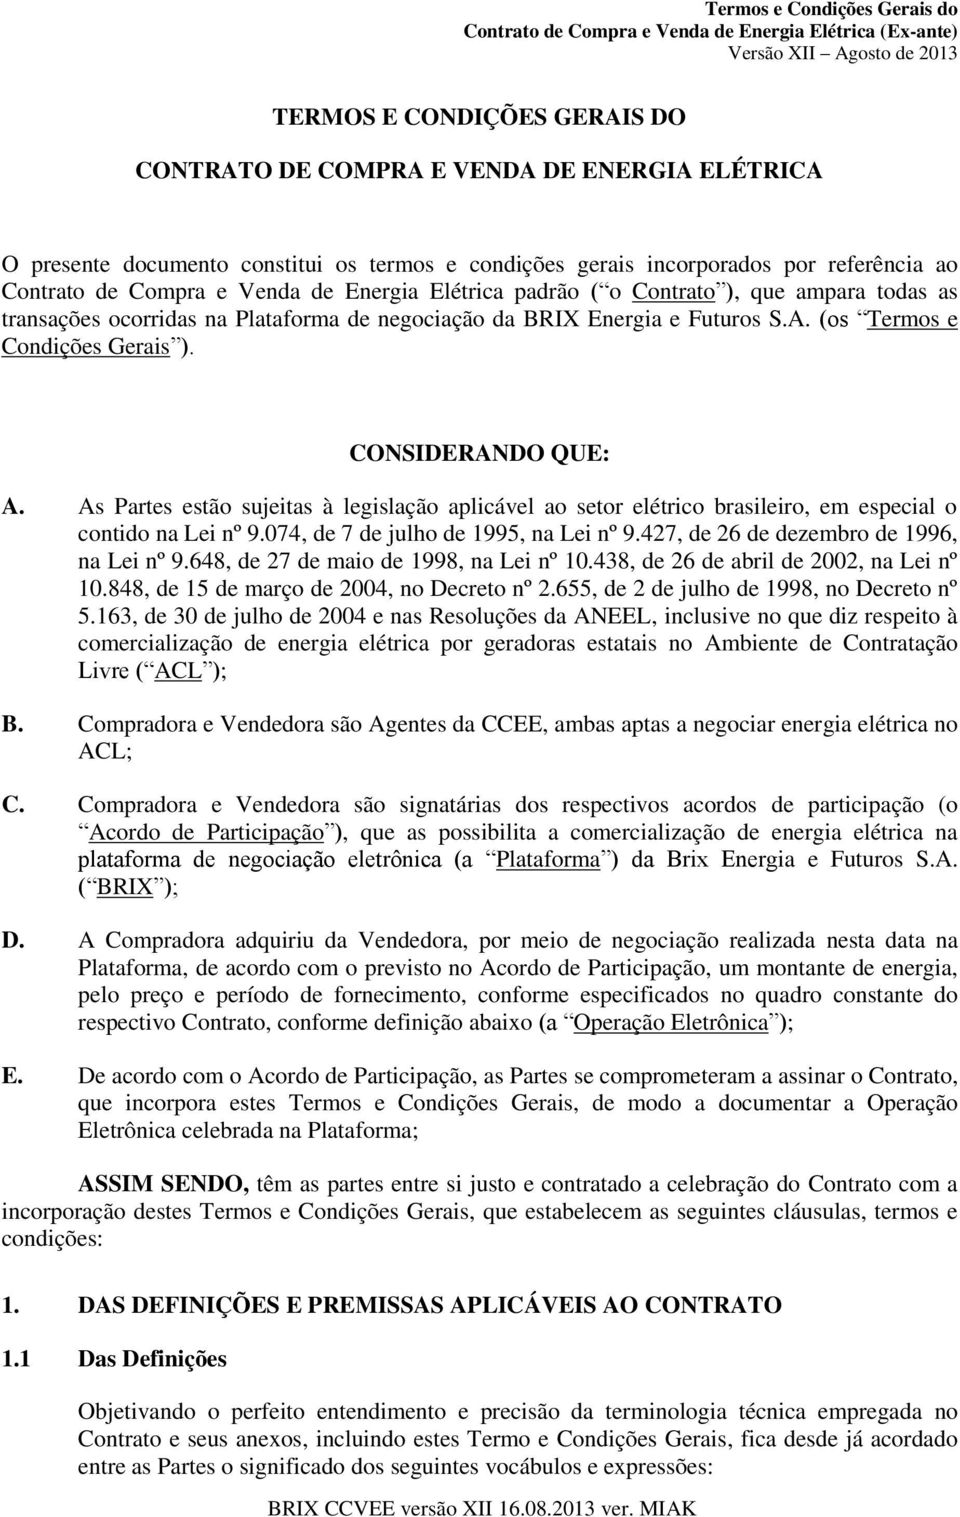 As Partes estão sujeitas à legislação aplicável ao setor elétrico brasileiro, em especial o contido na Lei nº 9.074, de 7 de julho de 1995, na Lei nº 9.427, de 26 de dezembro de 1996, na Lei nº 9.